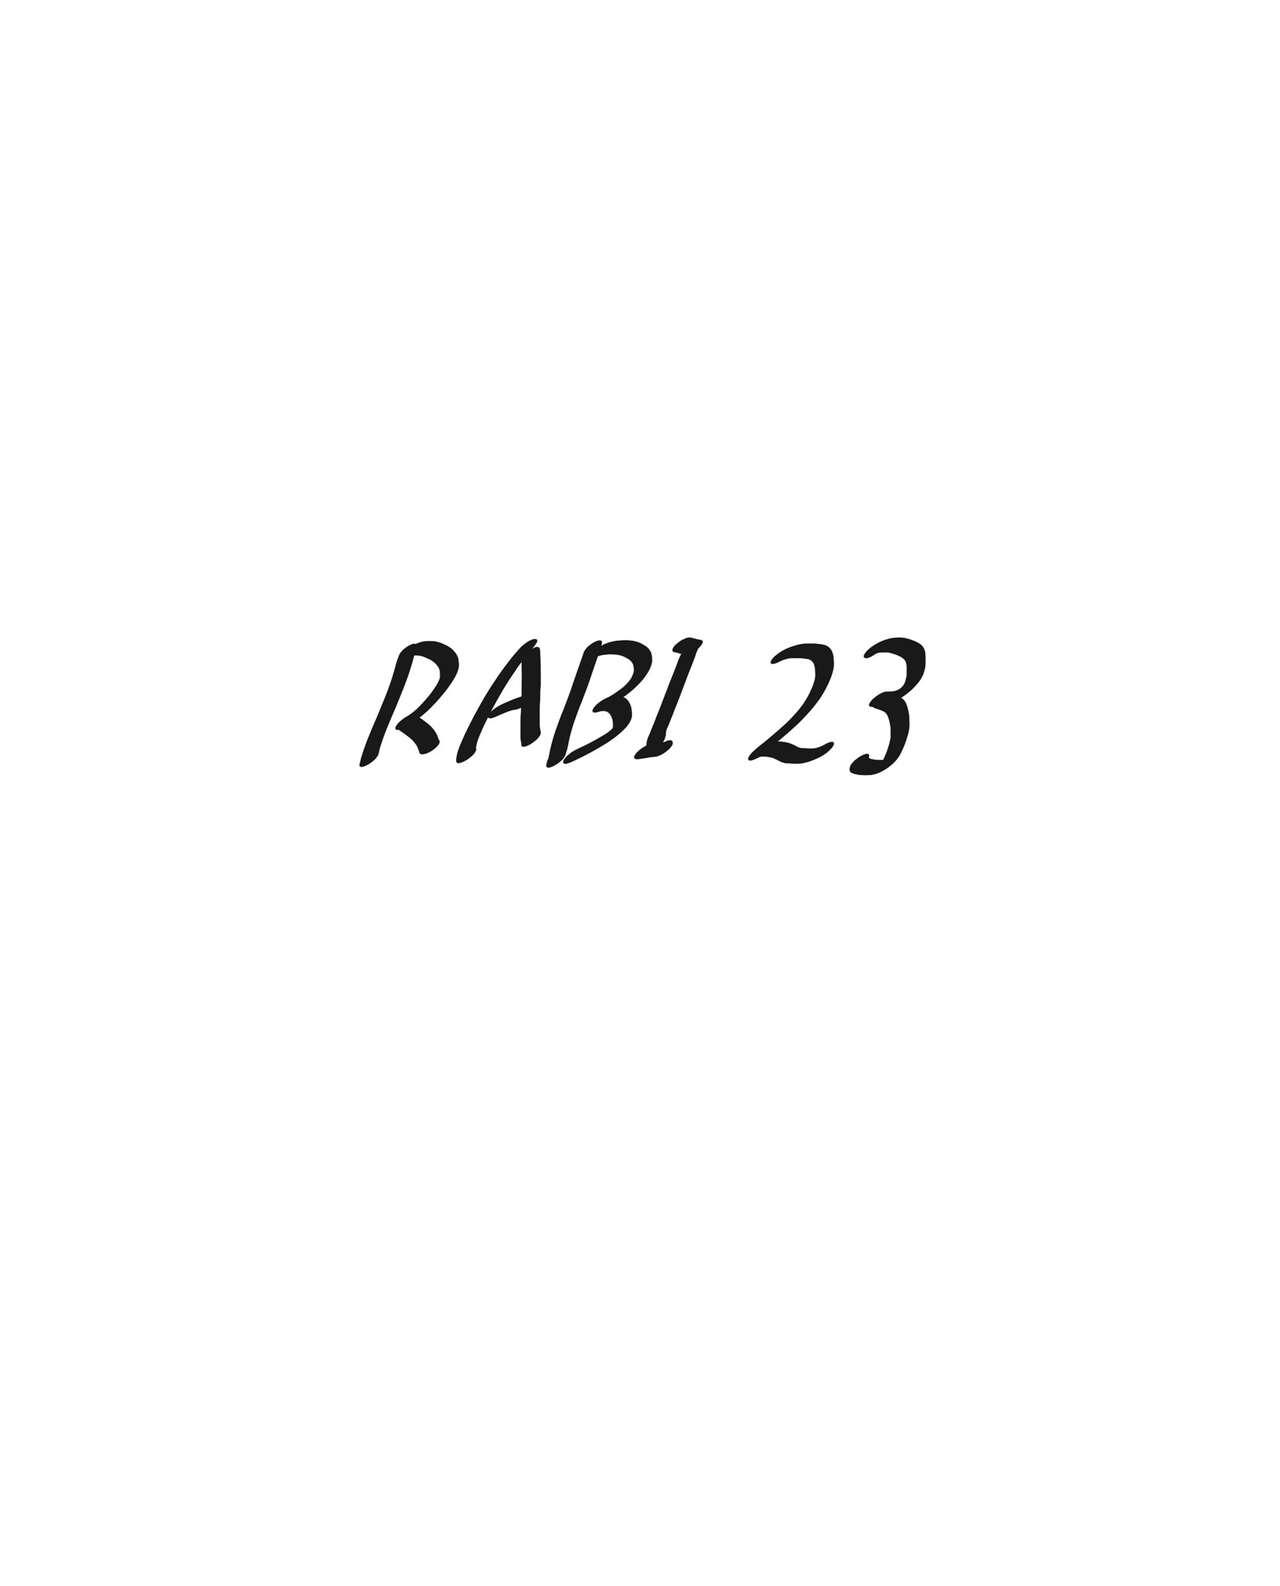 Secret rabi23 Funny - Picture 2